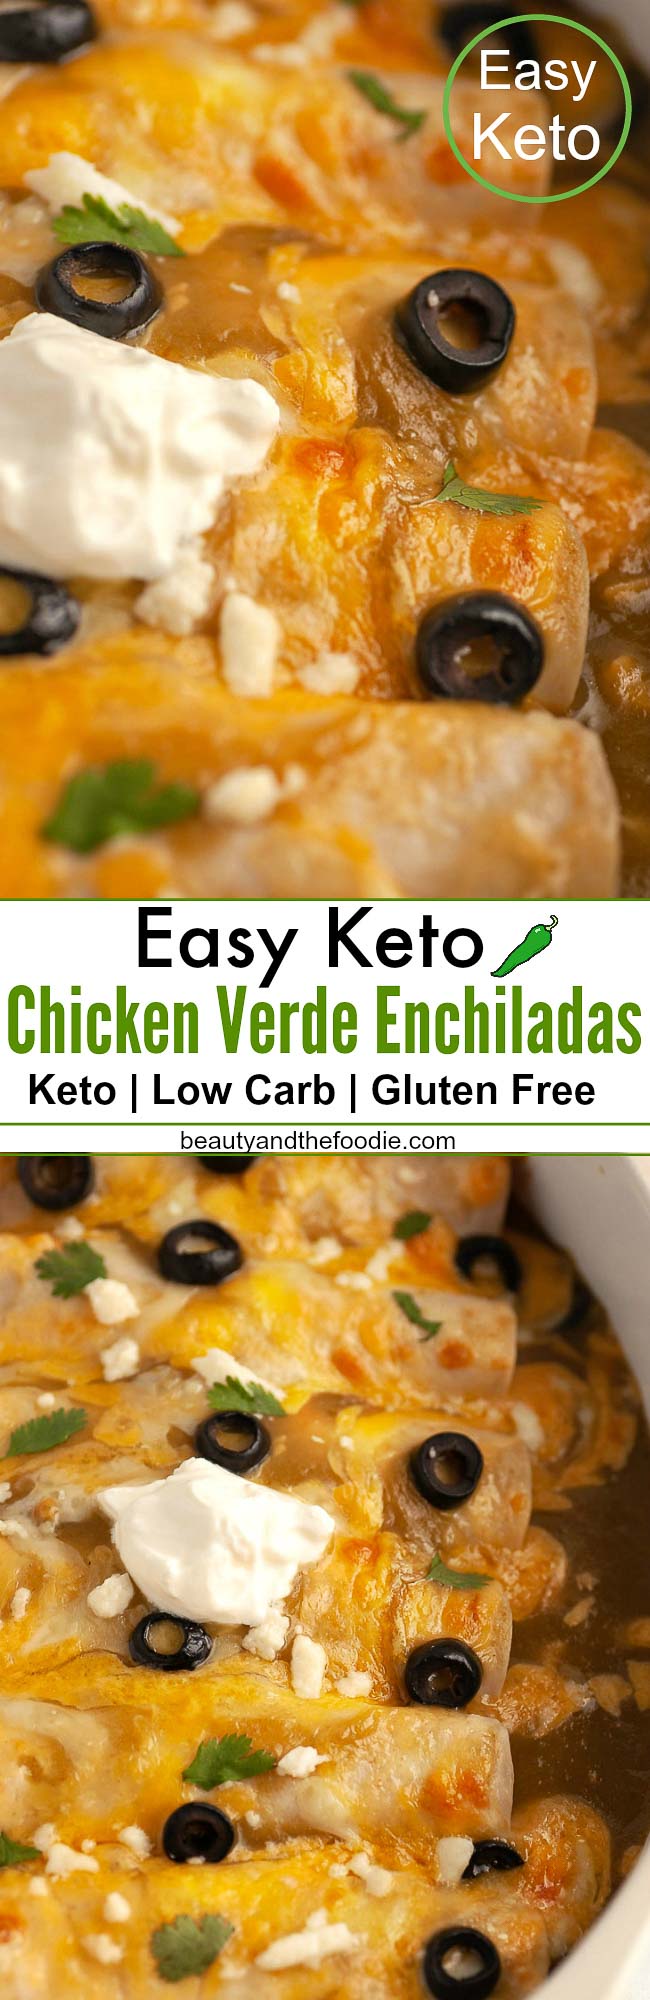 Easy Keto Chicken Verde Enchiladas- Low Carb & Gluten Free.